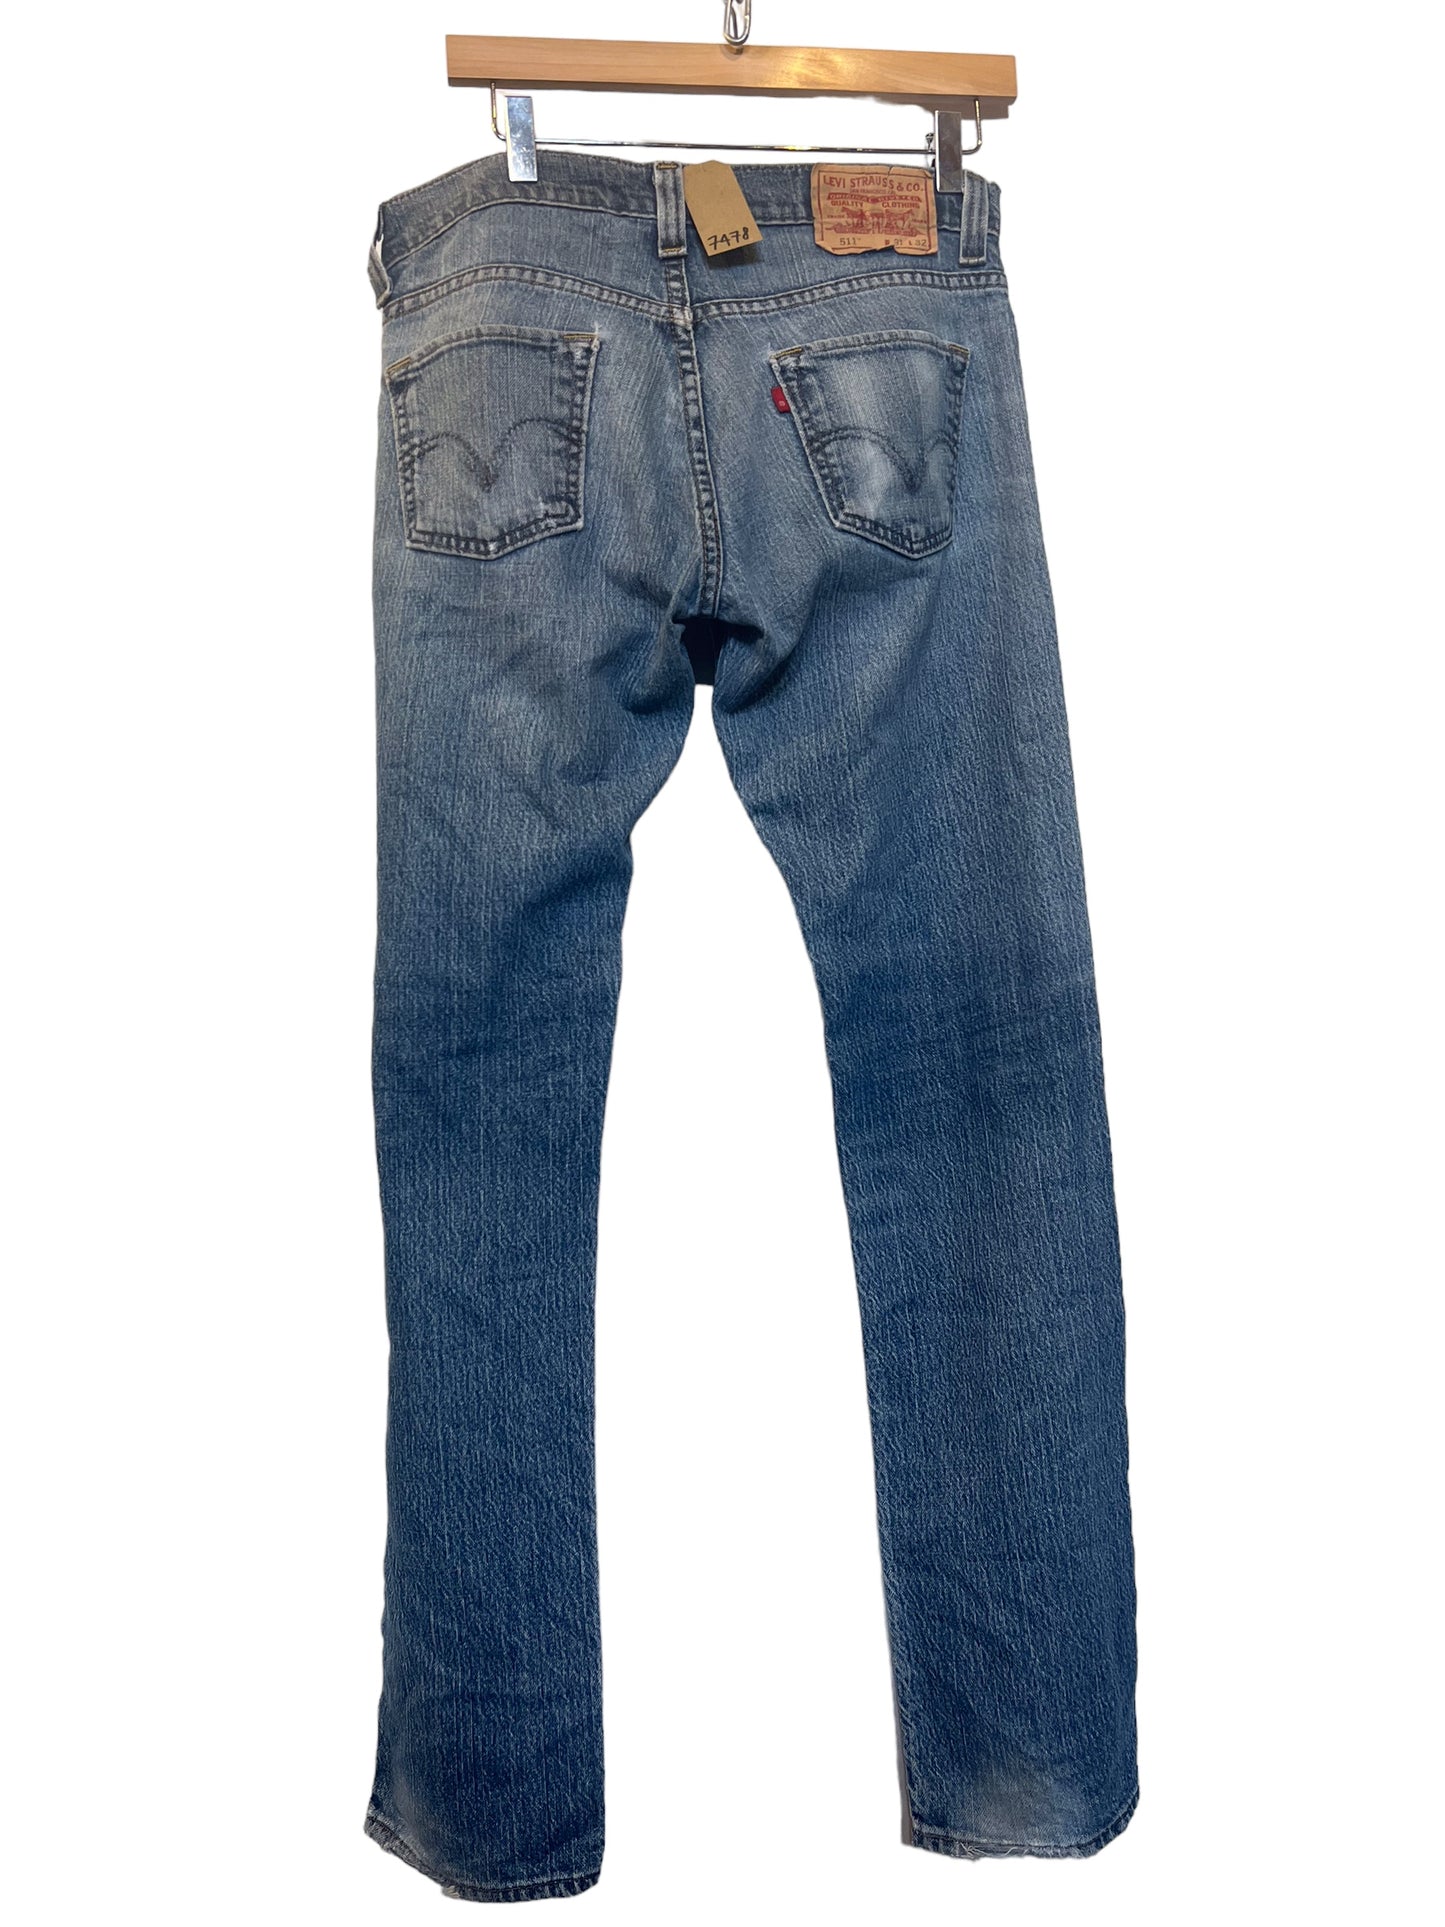 Levi 511 Jeans (31x32)